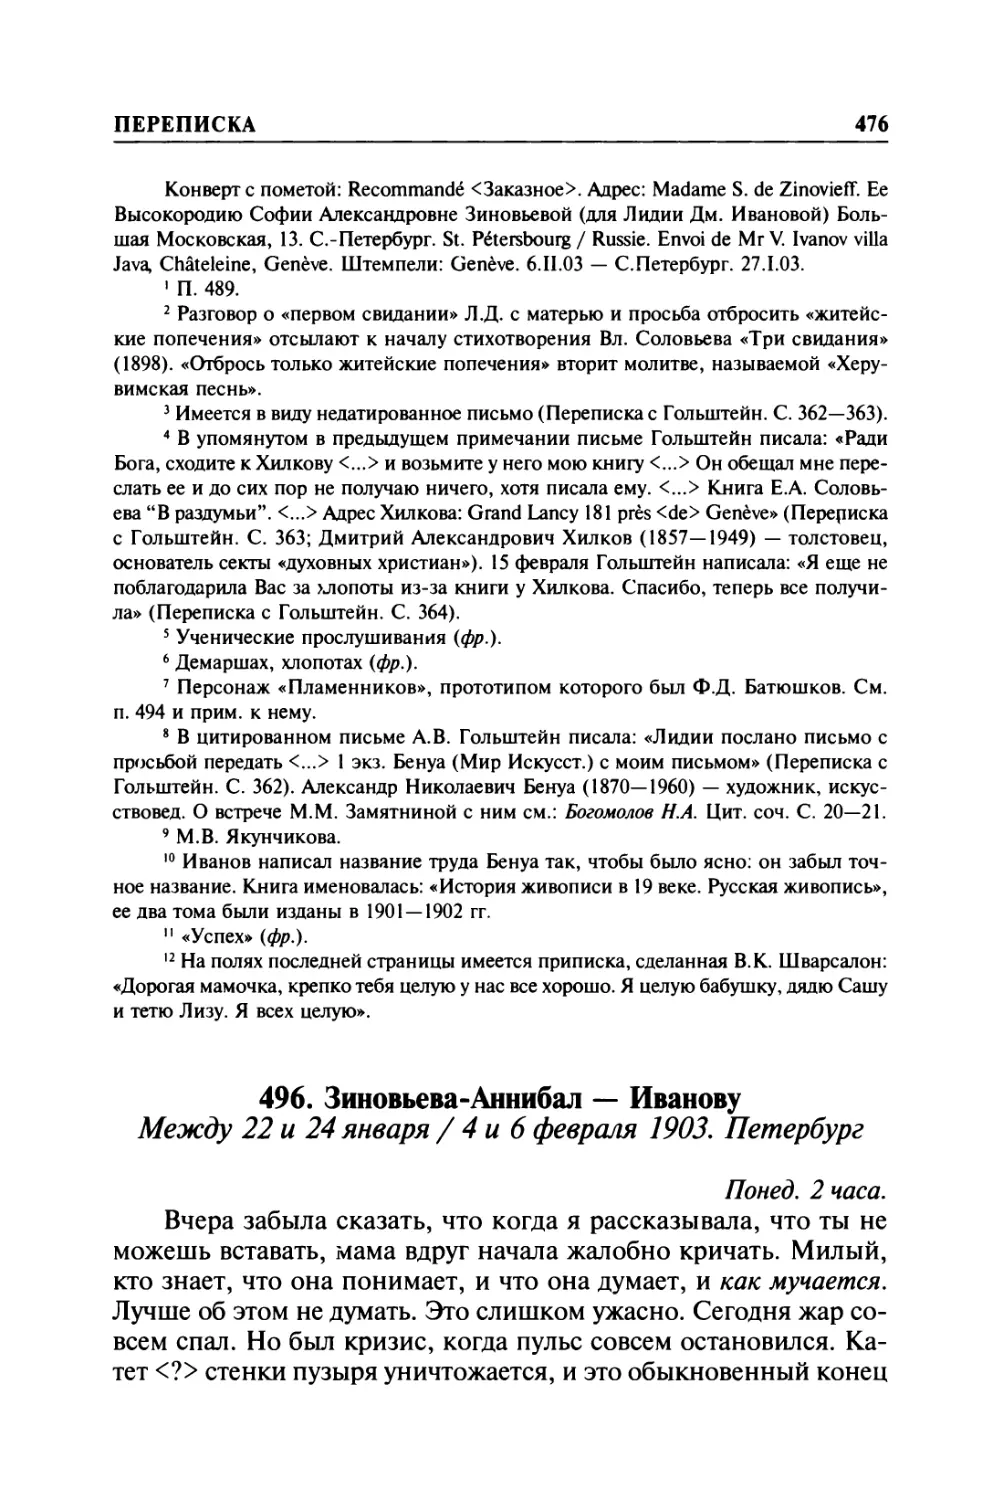 496. Зиновьева-Аннибал — Иванову. Между 22 и 24 января / 4 и 6 февраля 1903. Петербург